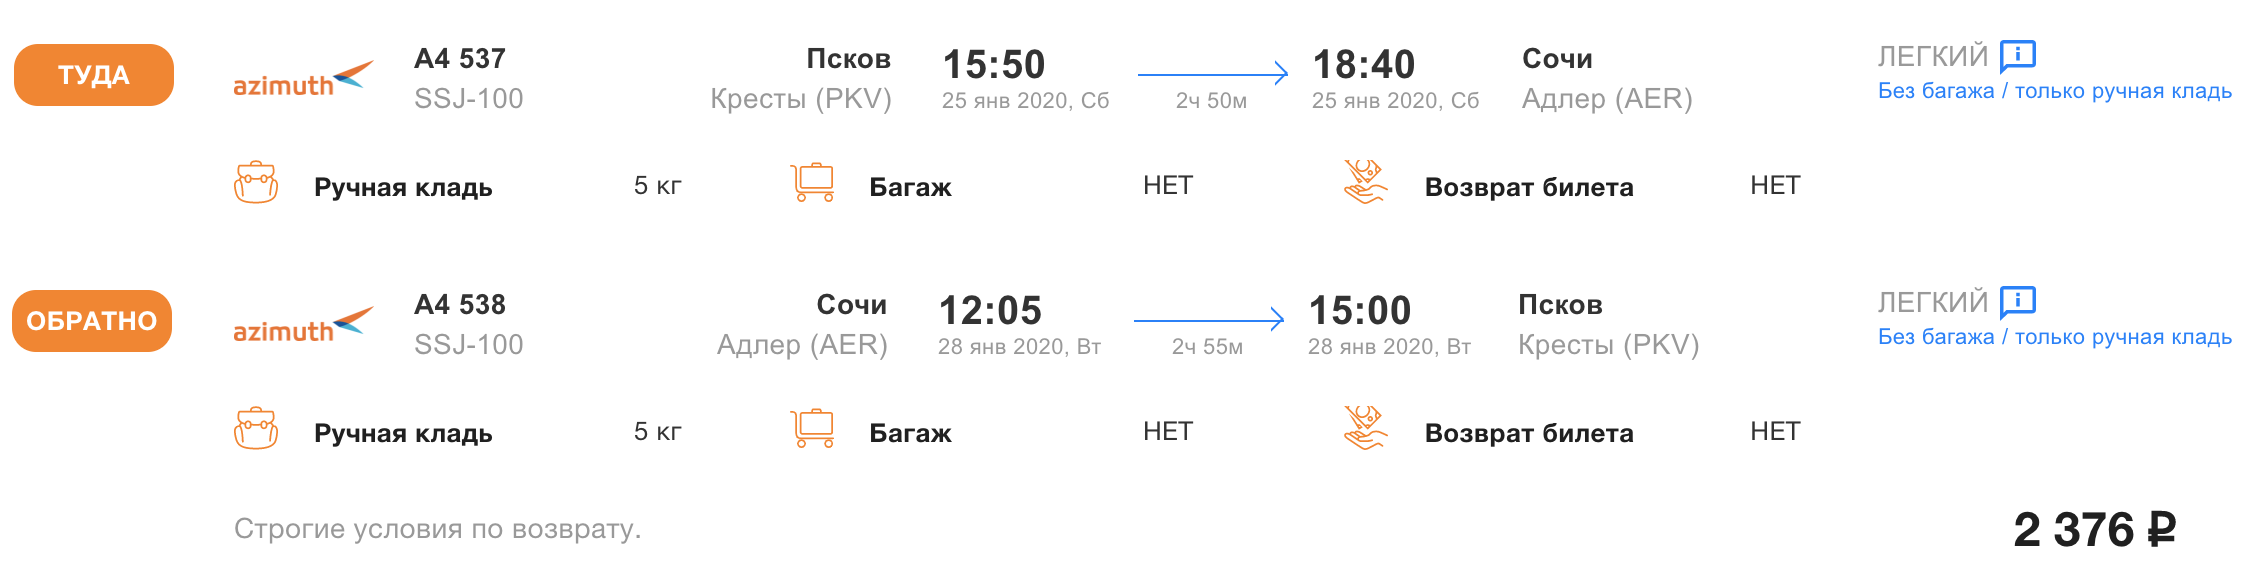 Сочи волгоград авиабилеты прямой рейс расписание киргизия красноярск авиабилеты